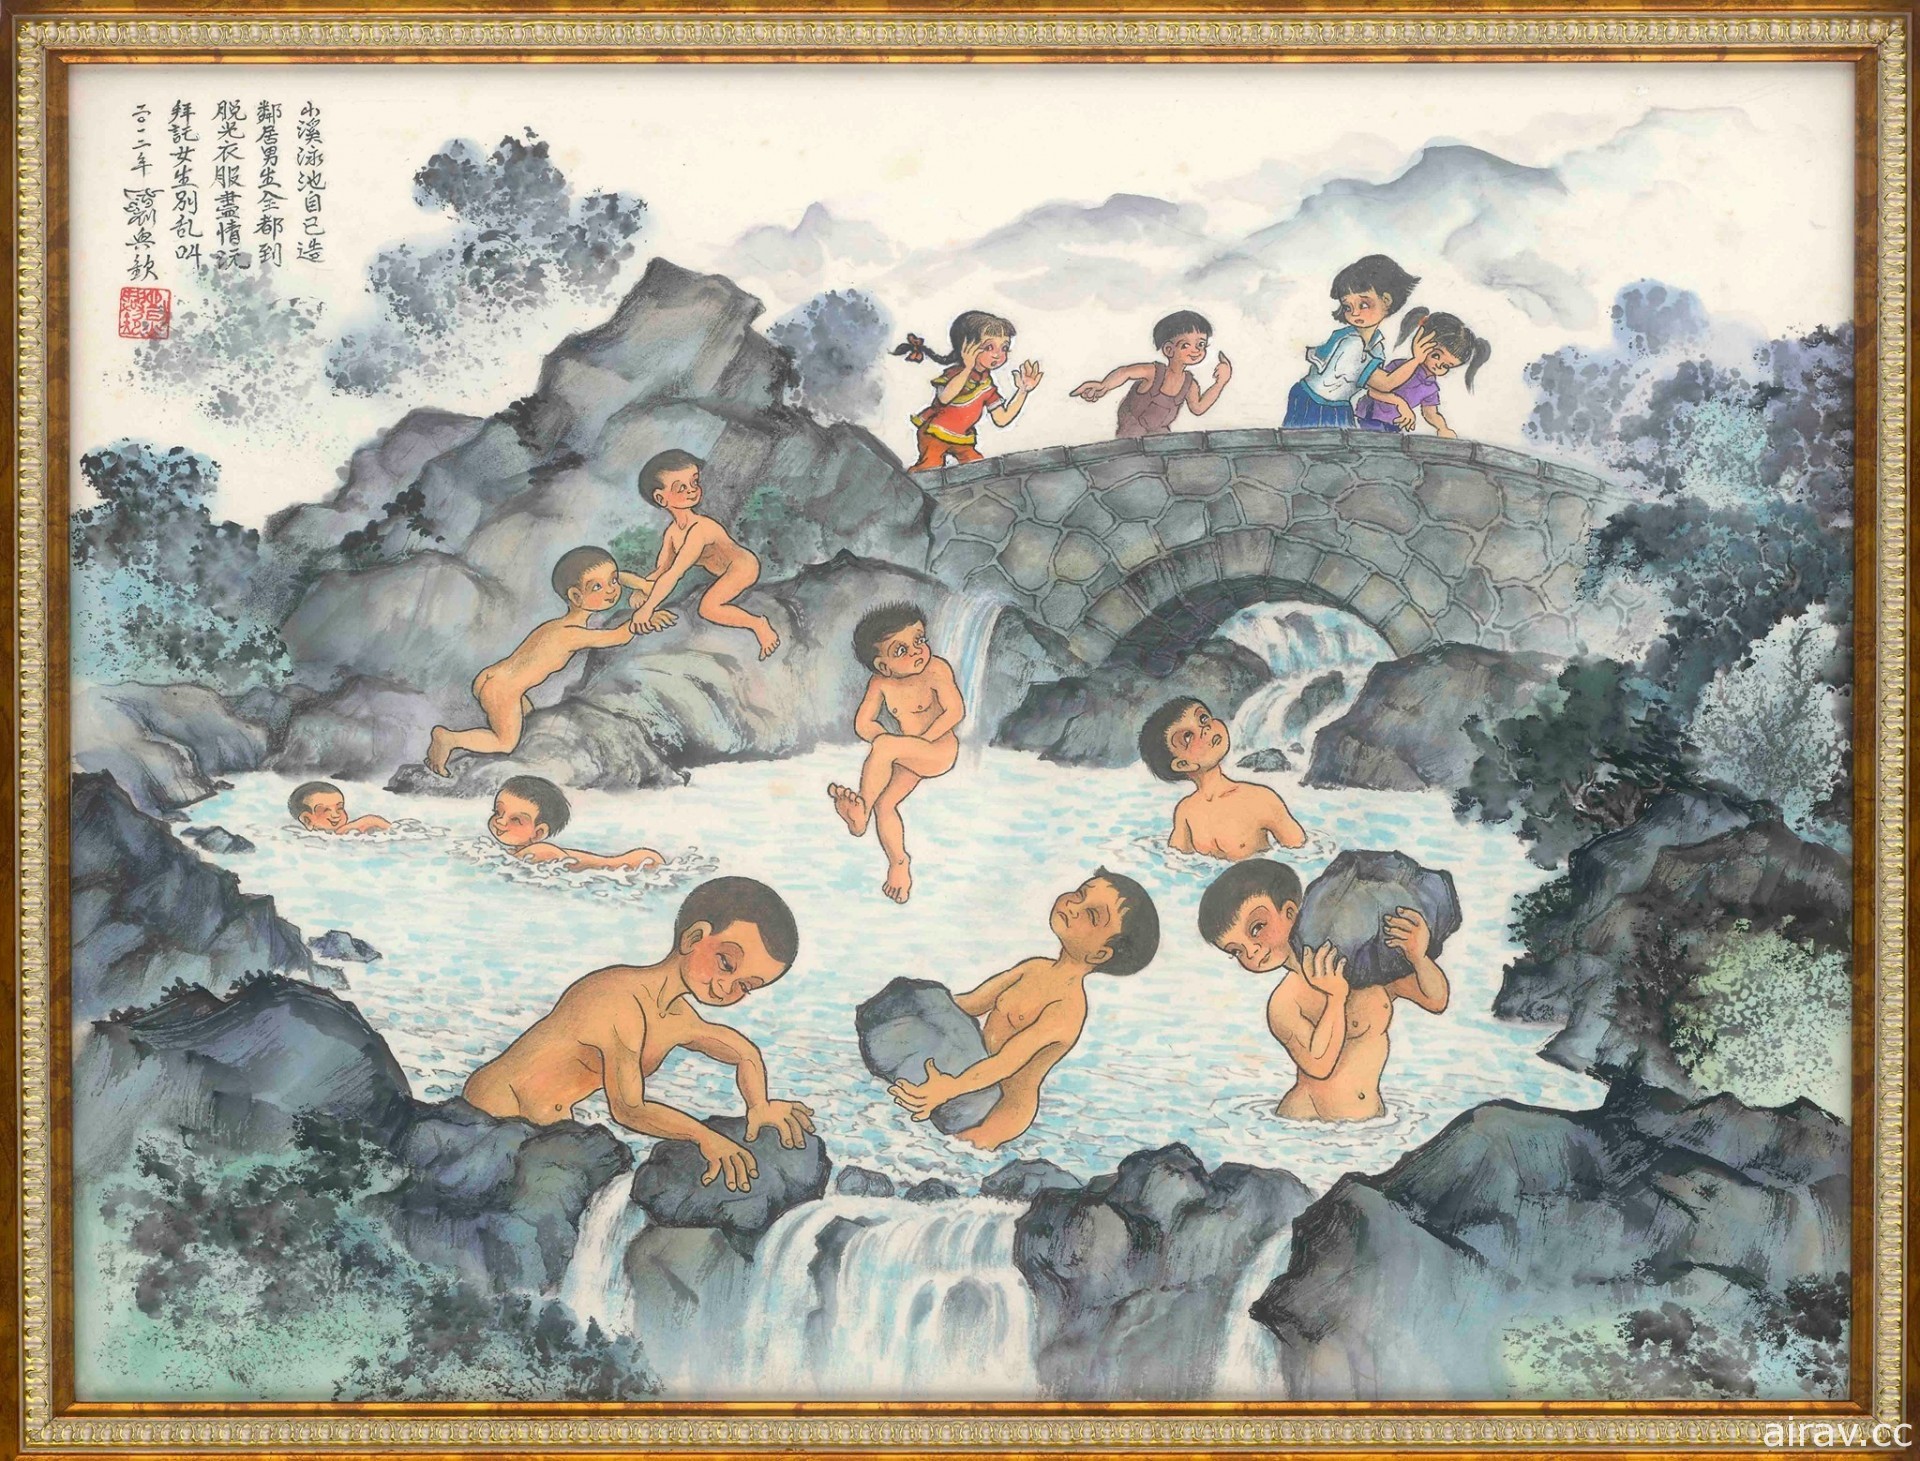 「童心．鄉情—劉興欽 88 回顧展」即日起至 1 月 31 日於國父紀念館展出